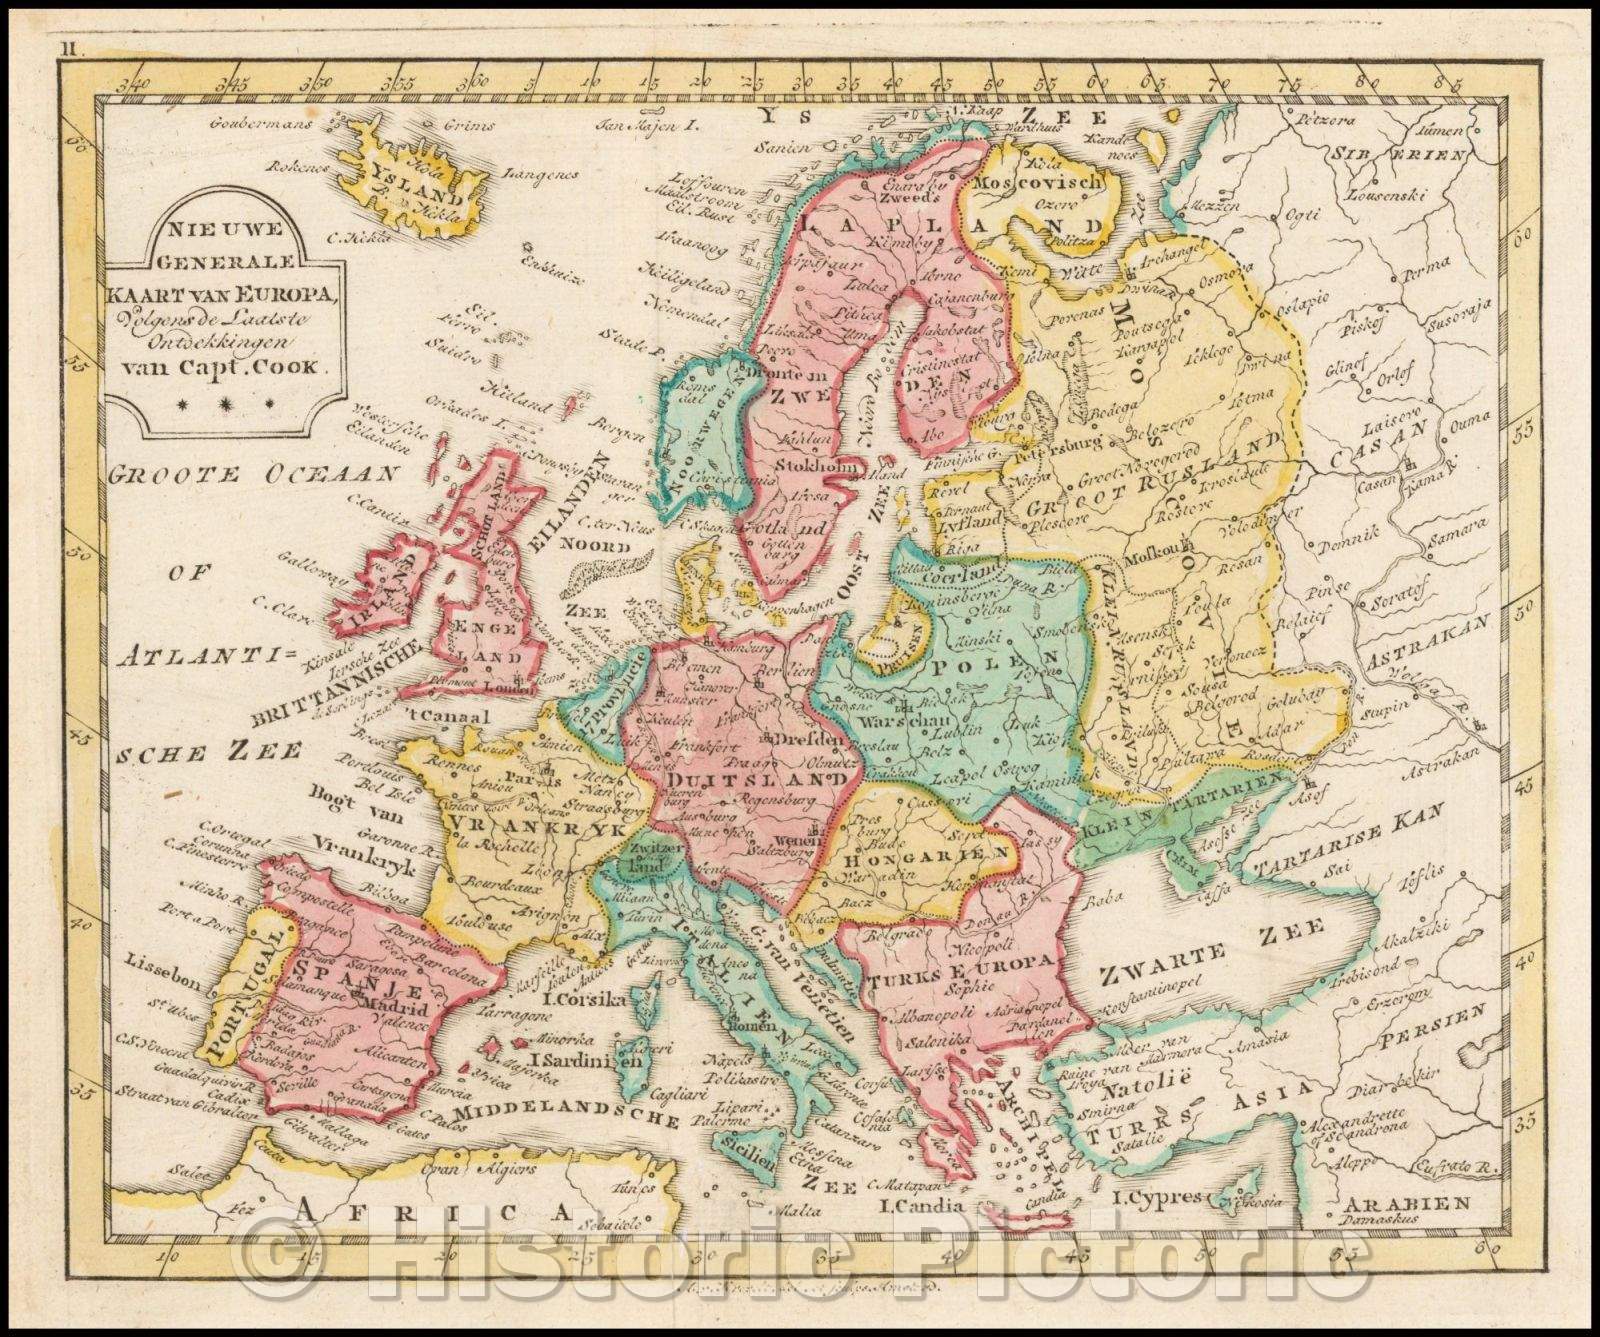 Historic Map - Nieuwe Generale Kaart van Europa Volgens de Laatste Ontdekkingen van Capt. Cook/Map of Europe, pubished in Amsterdam by Jan Elwe, 1786 - Vintage Wall Art